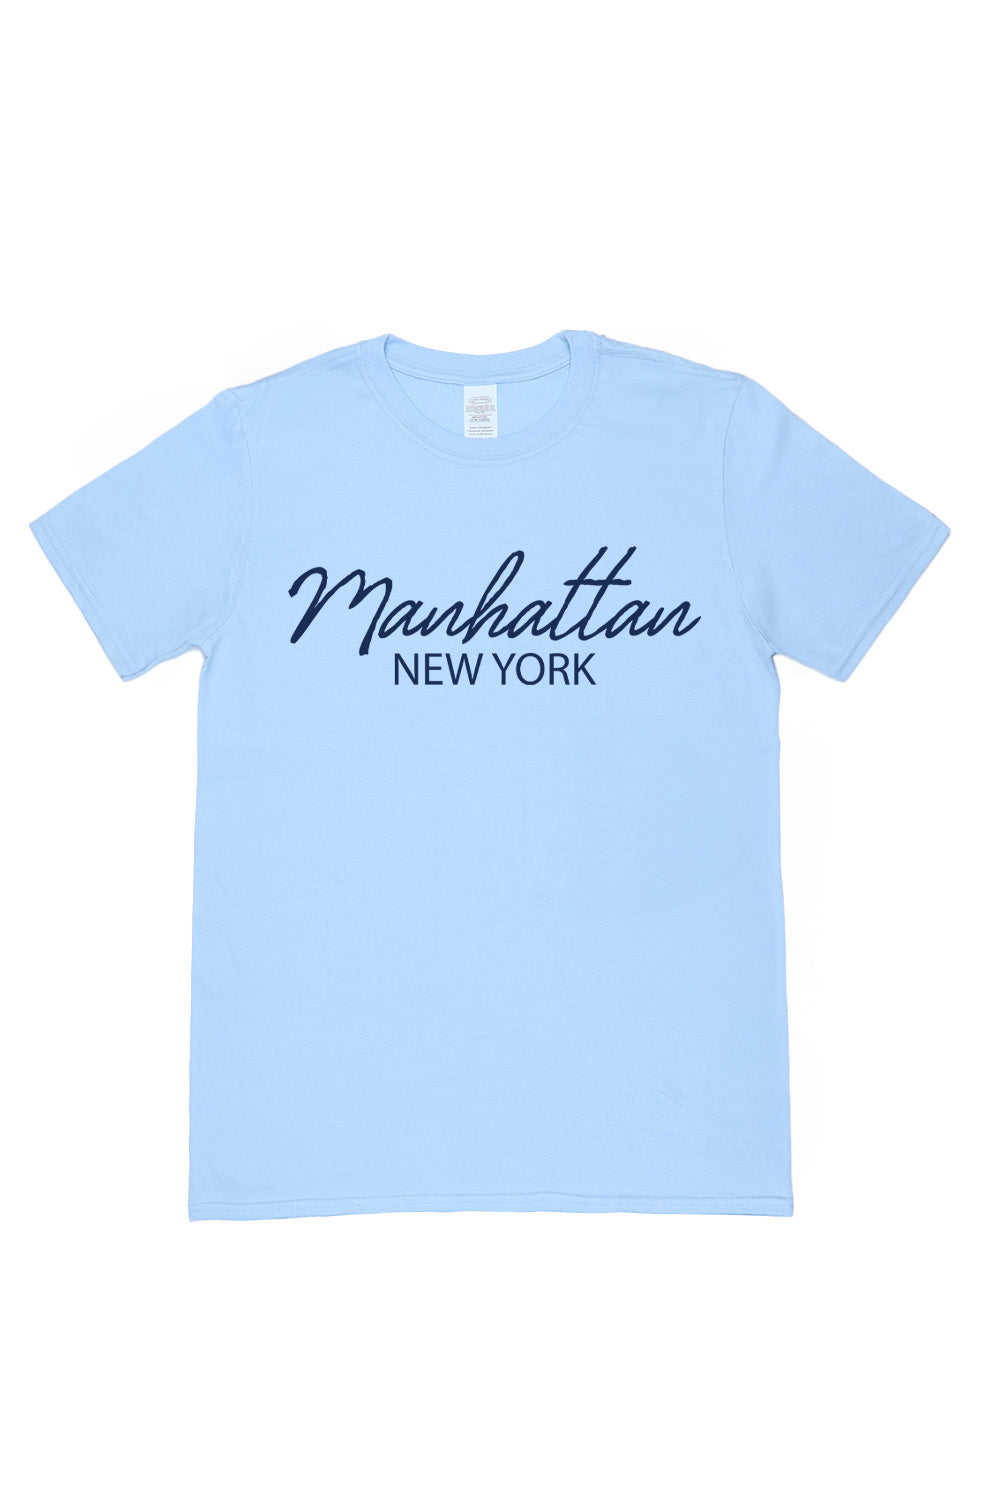 Manhattan T-Shirt in Light Blue (Custom Packs)